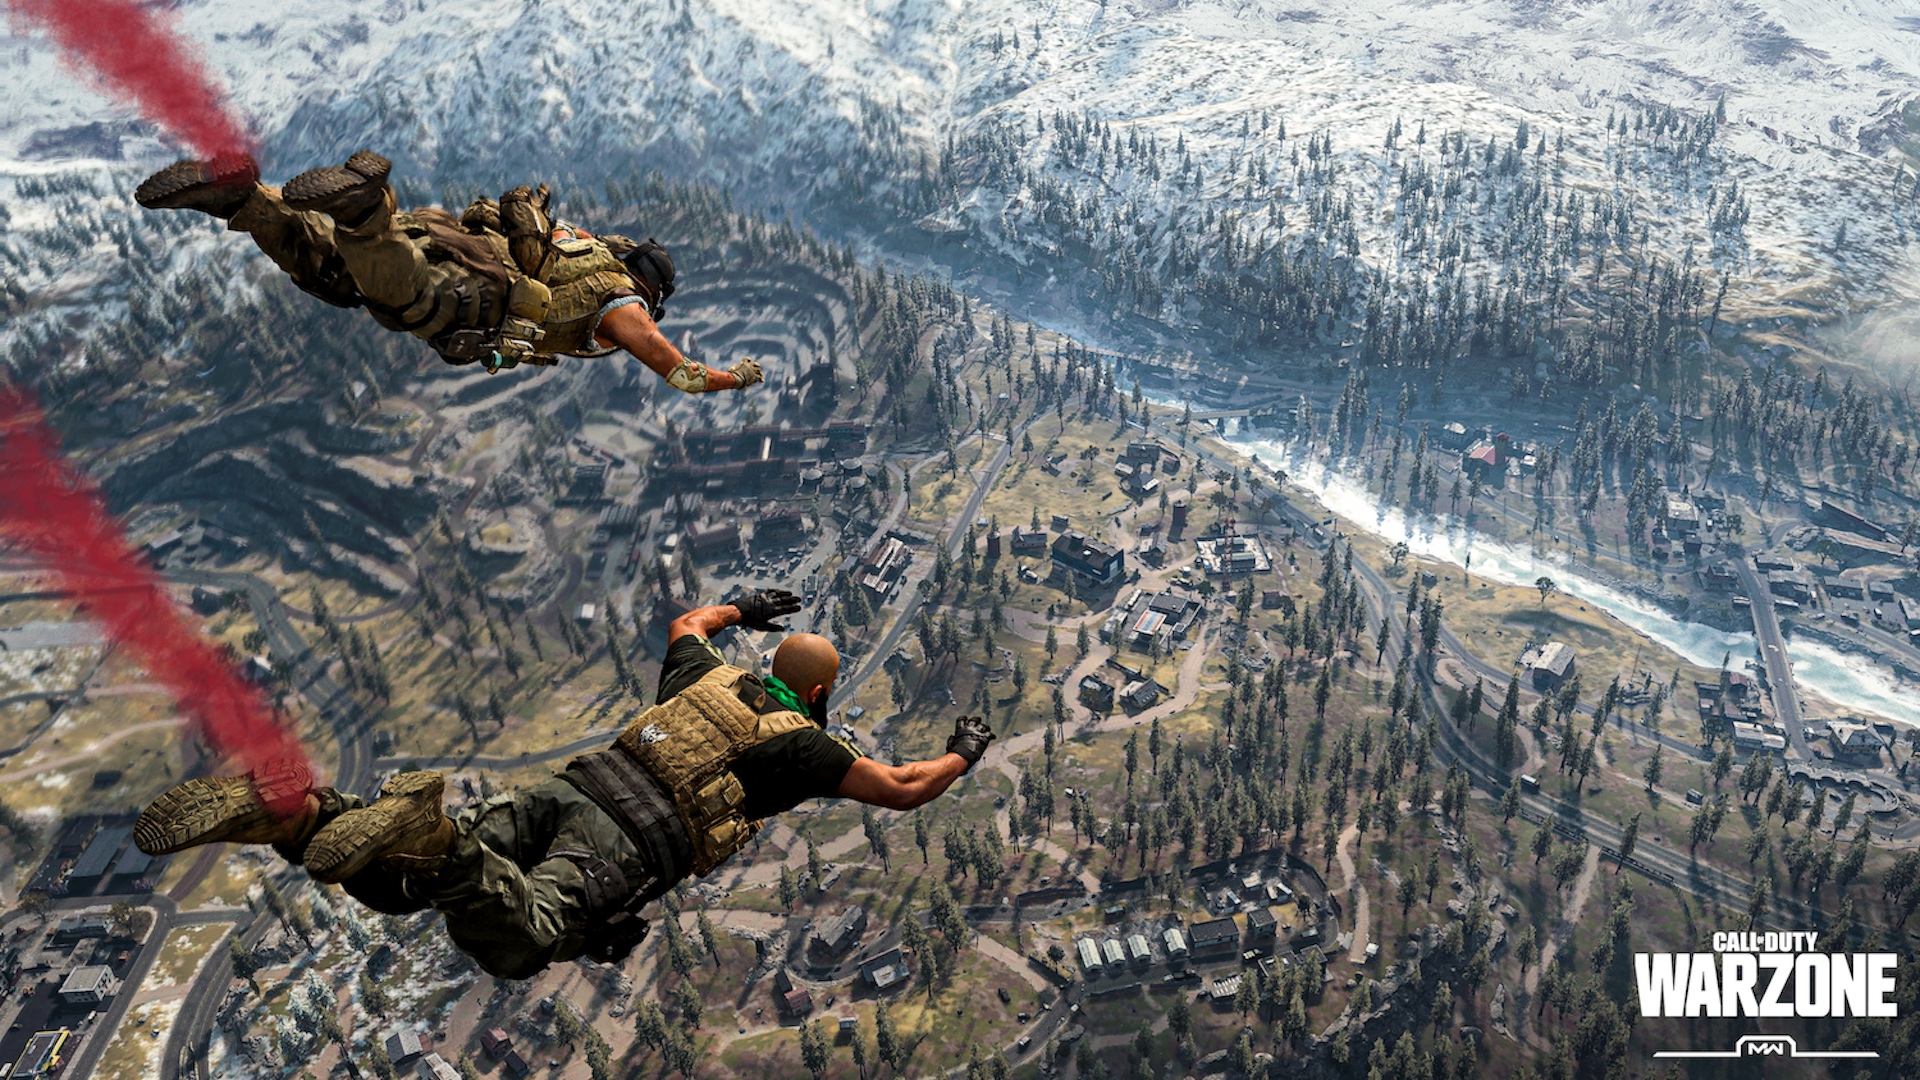 Imaxe de Call of Duty Warzone